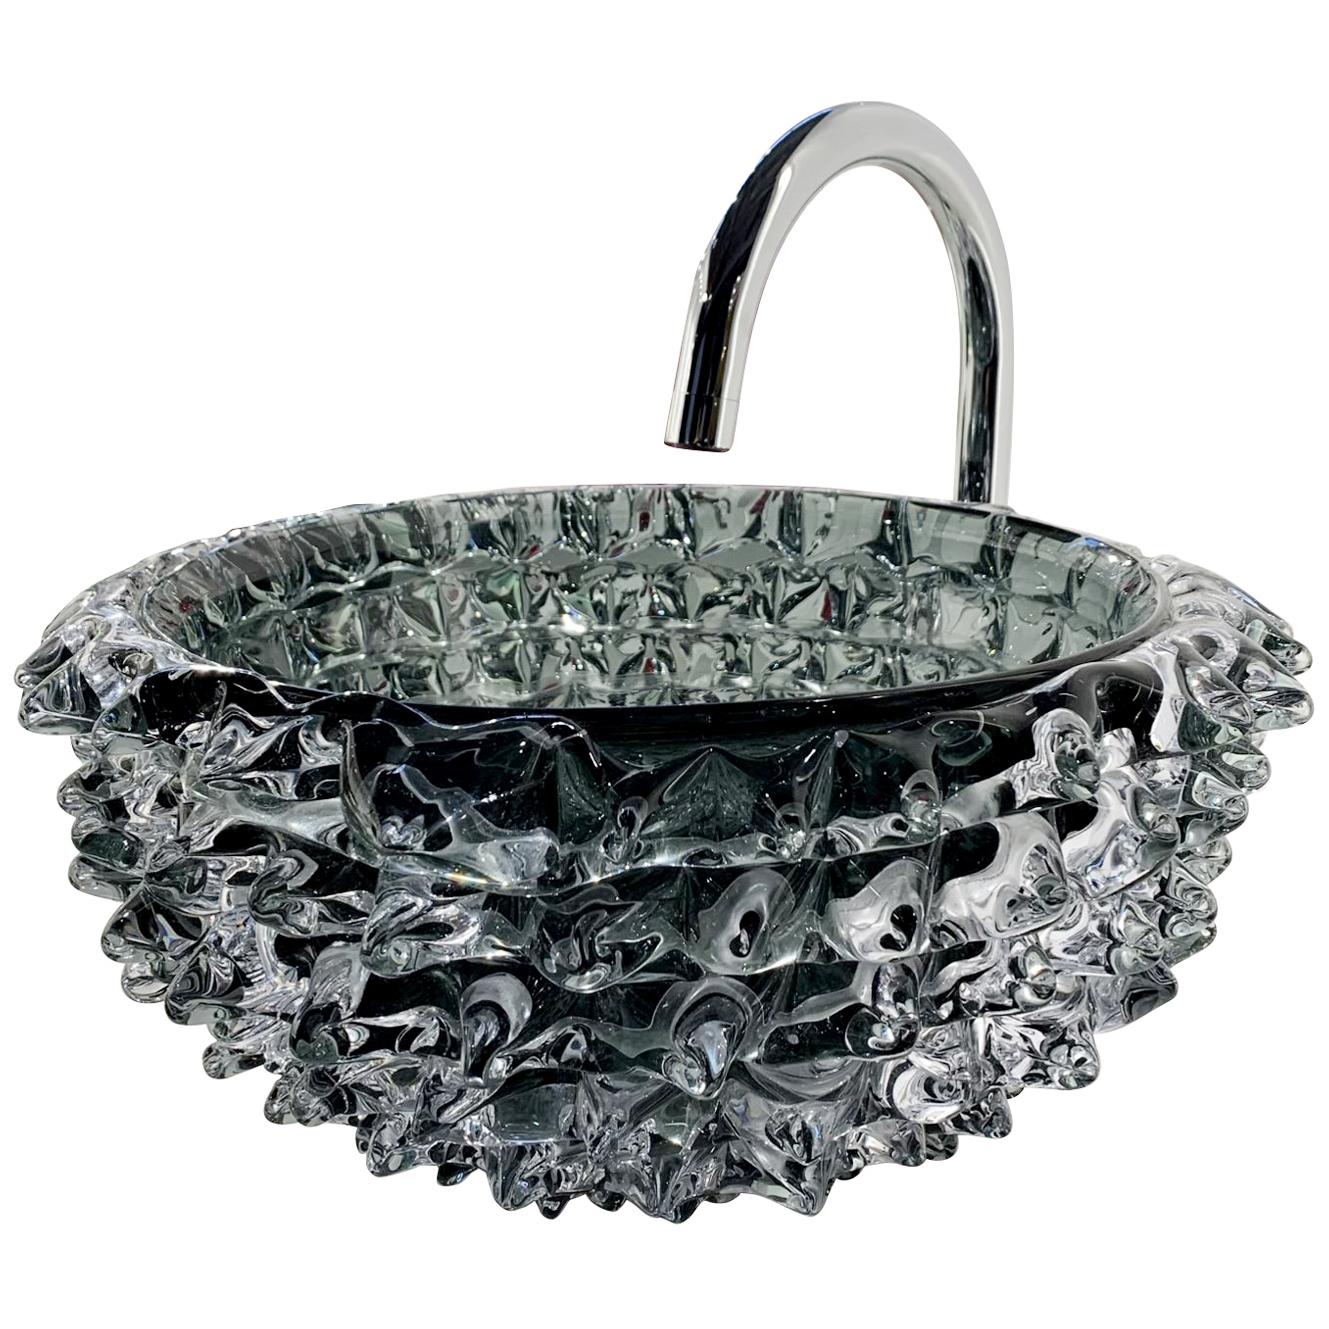 Murano Glass Sink - Washbasin